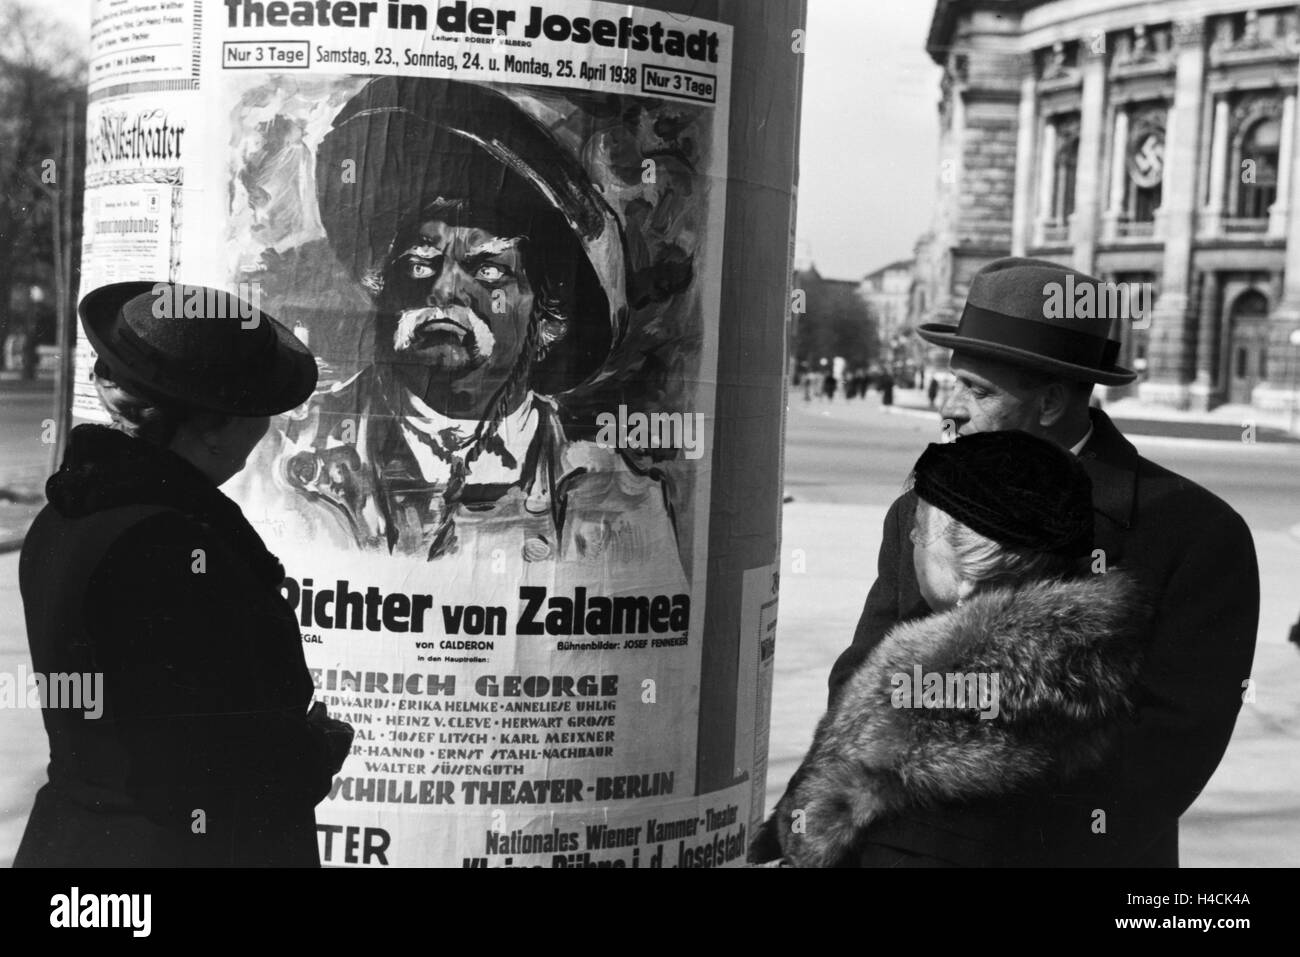 Ein Besuch Im Theater in der Josefstadt, Wien, 1930er Jahre Deutsches Reich. Besichtigung der Wiens Theater in der Josefstadt, Deutschland der 1930er Jahre Stockfoto